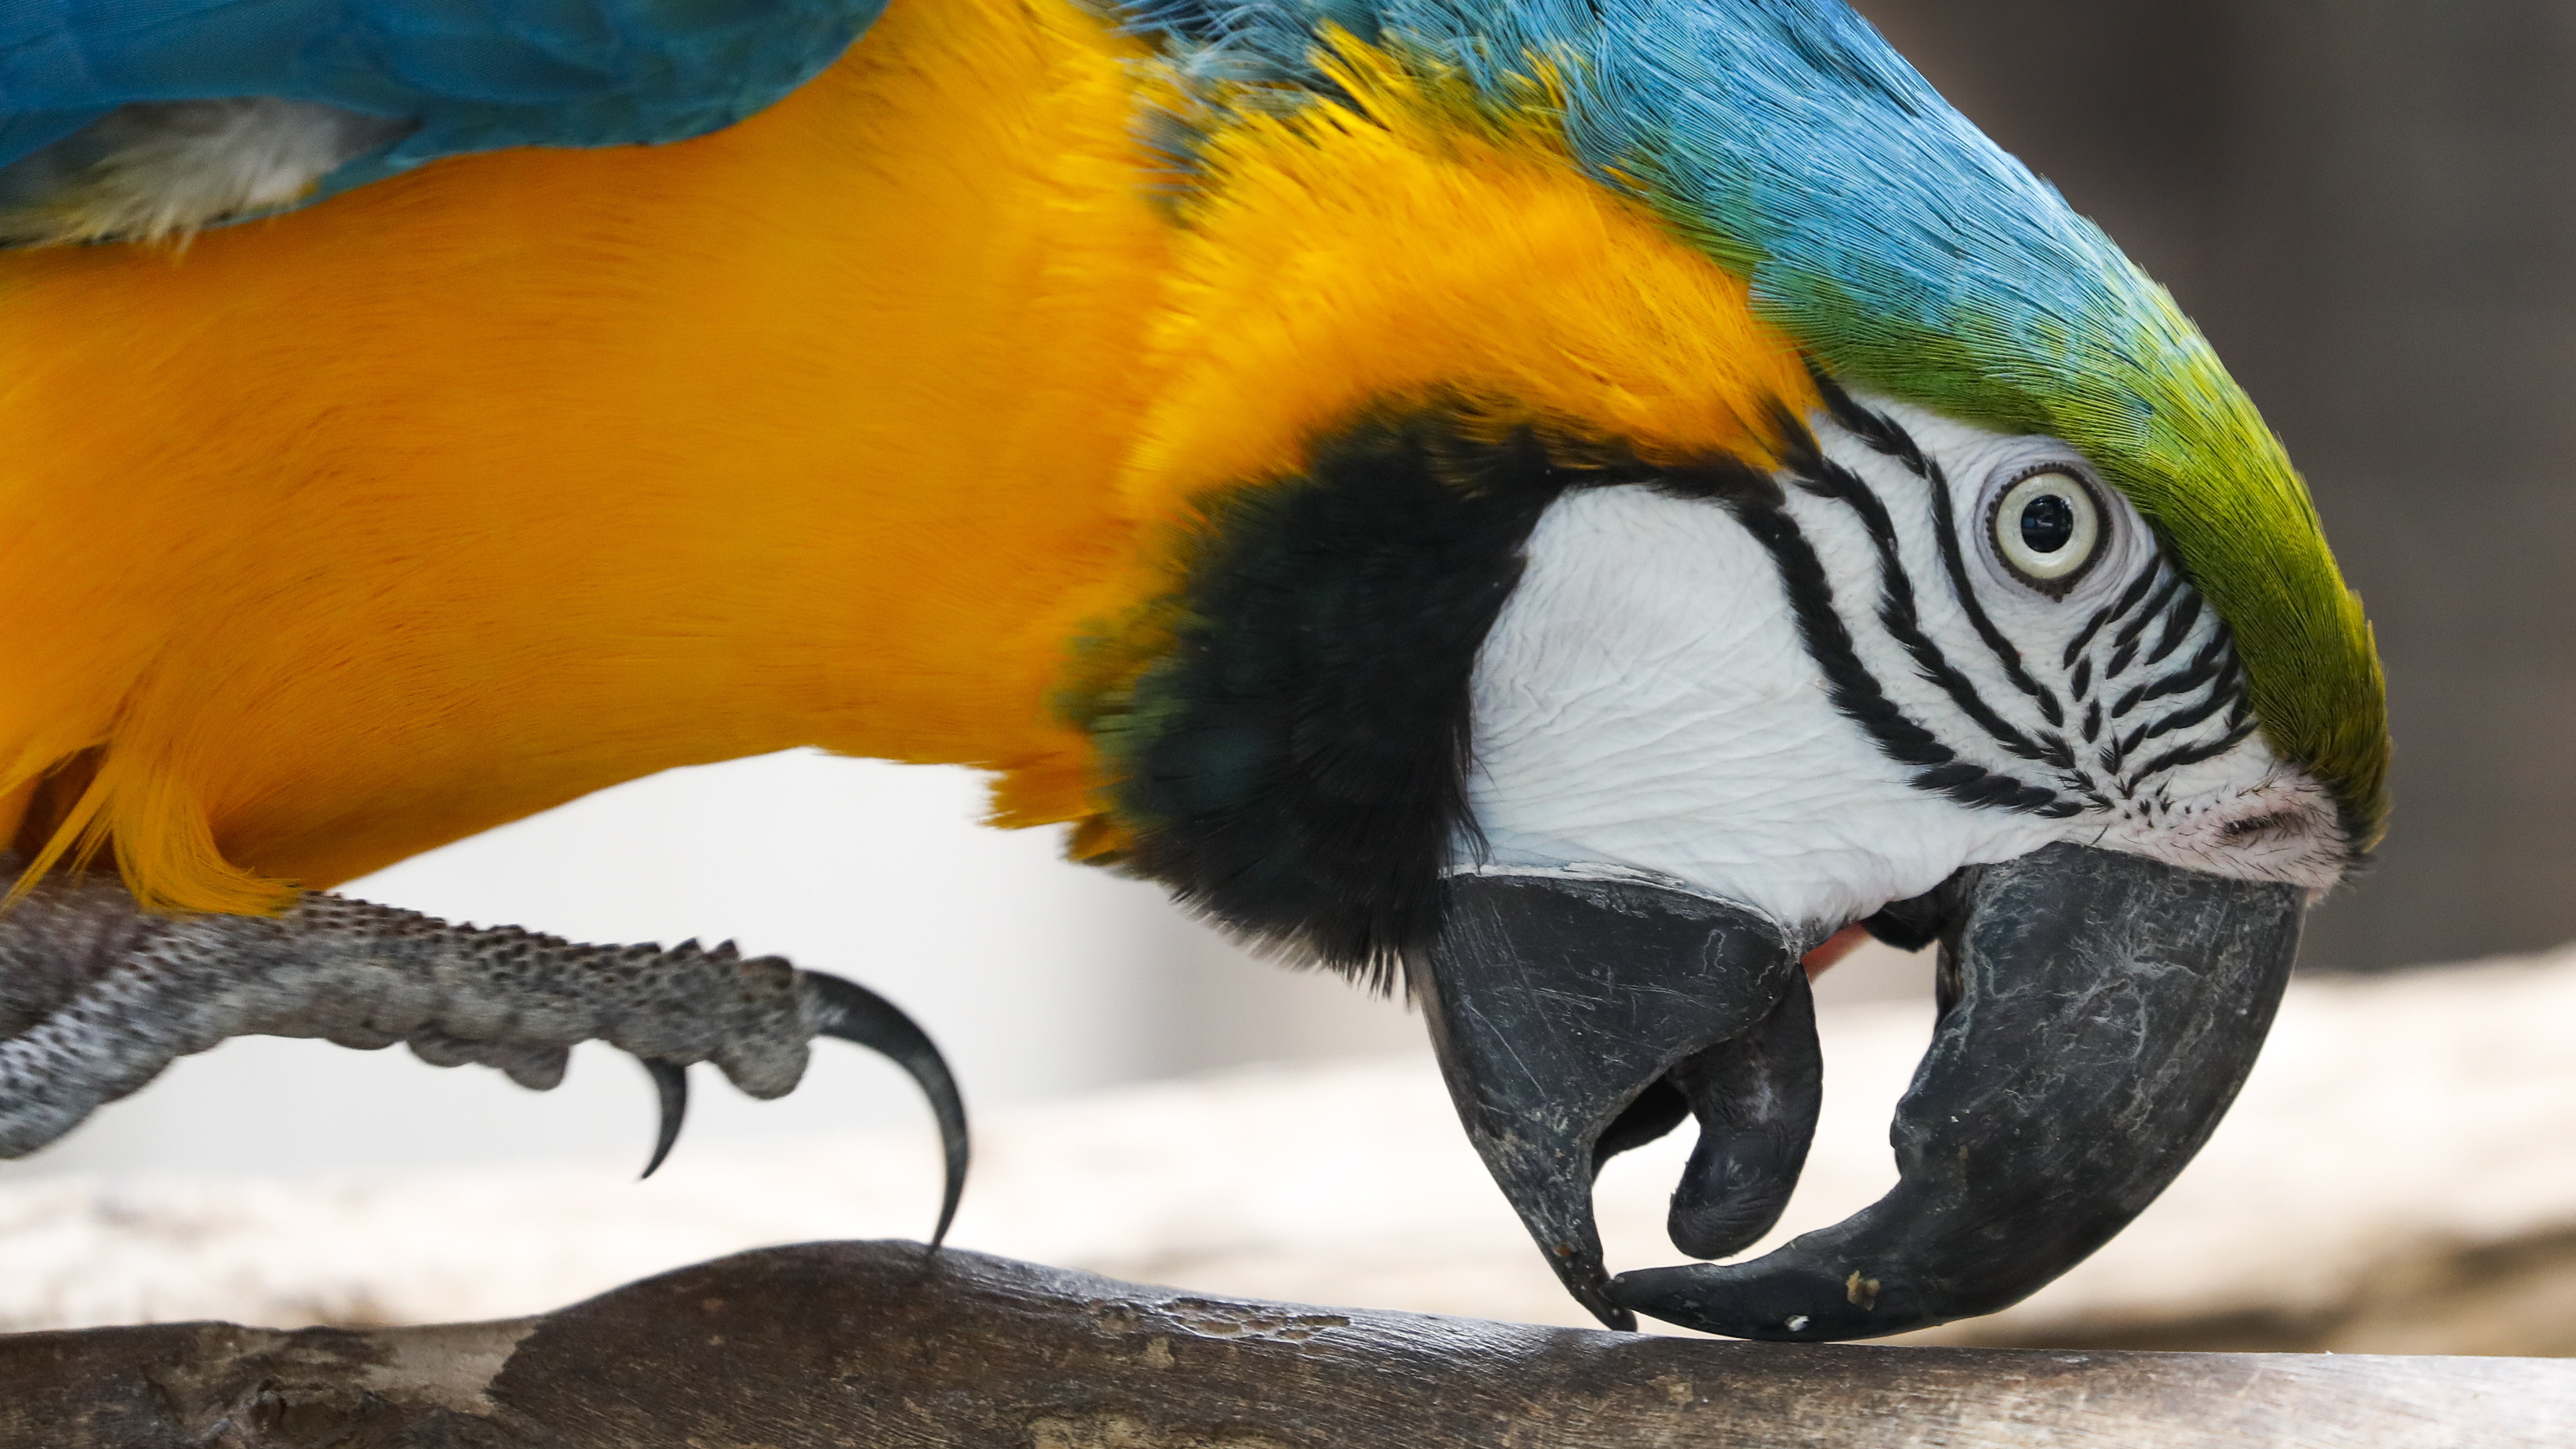 Резерват за дива природа "Светът на птиците" е зоопарк в Хаут Бей, предградие на Кейптаун, Република Южна Африка. На площ от 4 хектара са представени около 3000 екземпляра, спадащи към 400 животински вида в колекцията, от които около 330 са видове птици.